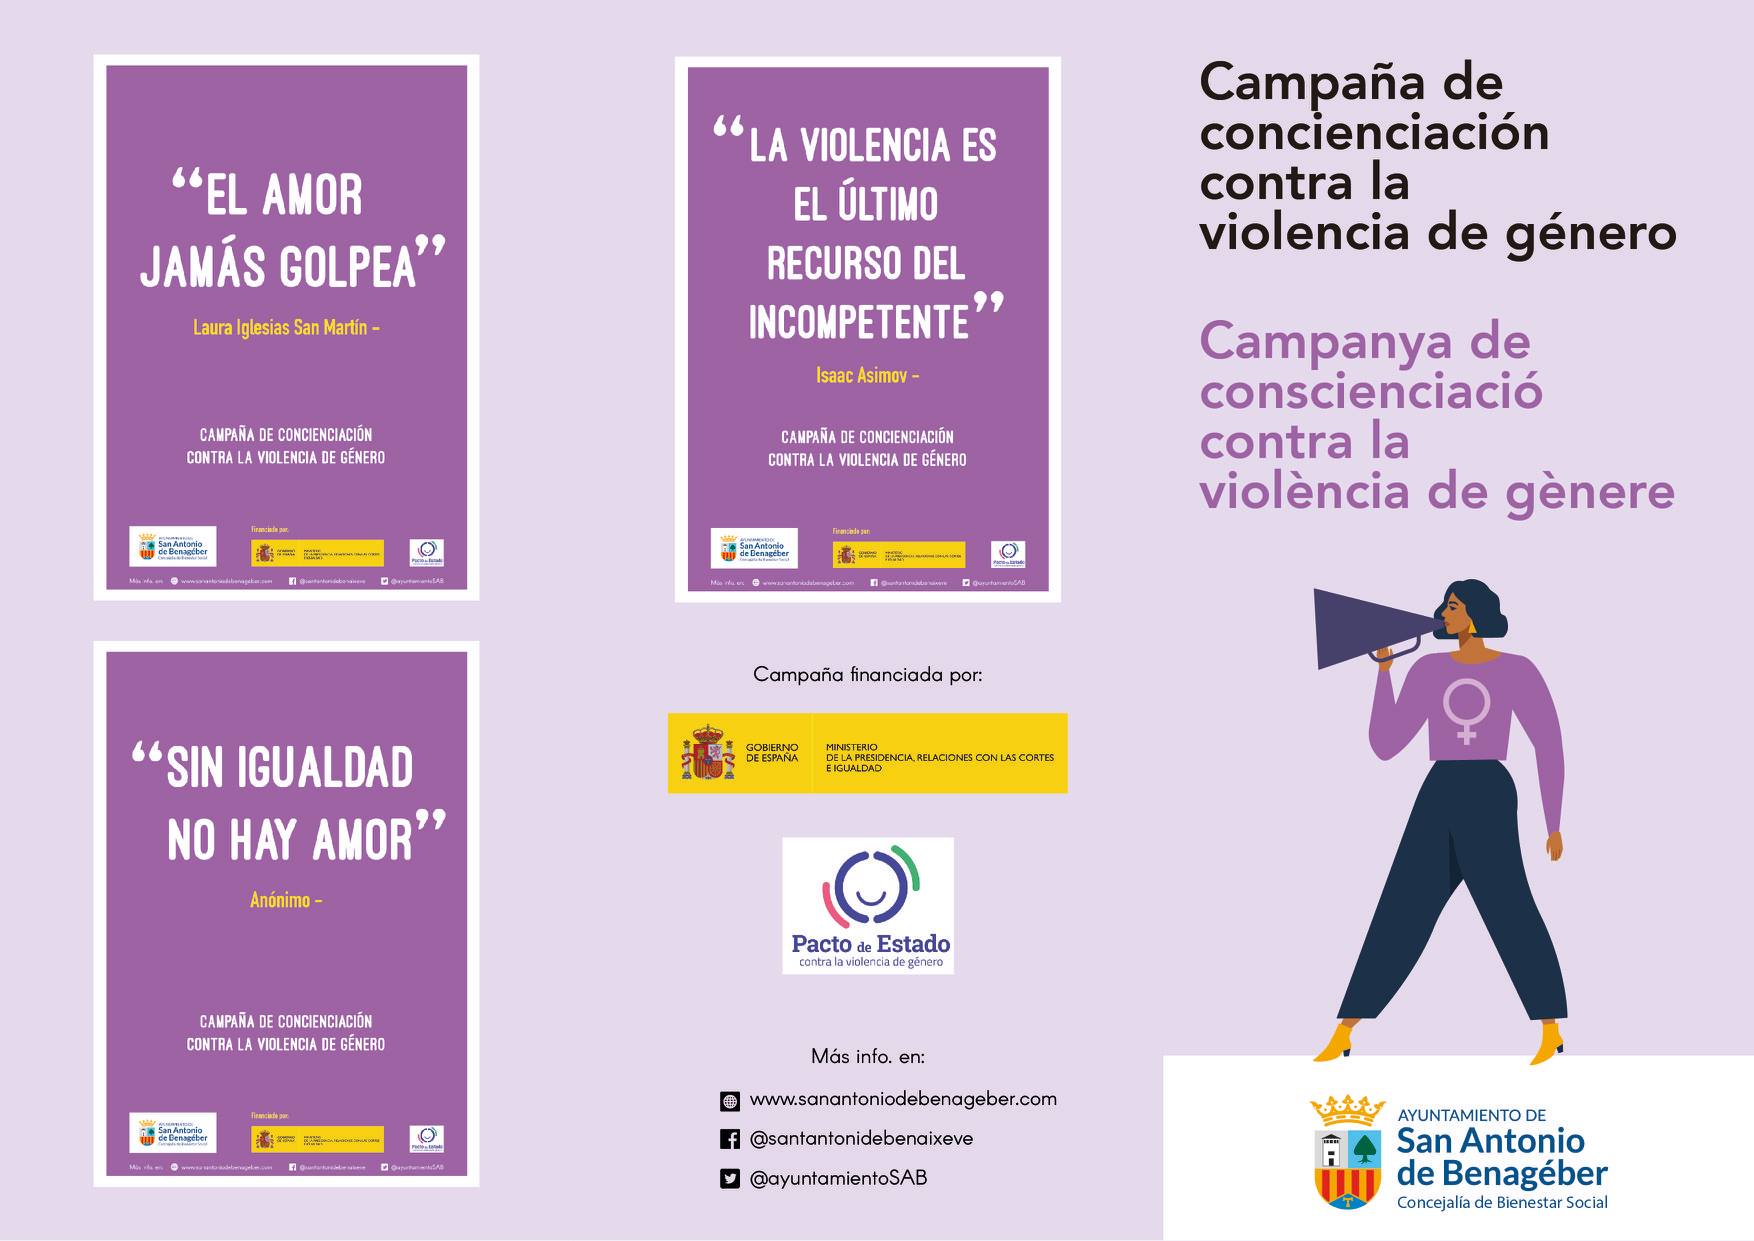 CAMPAÑA DE CONCIENCIACIÓN CONTRA LA VIOLENCIA DE GÉNERO